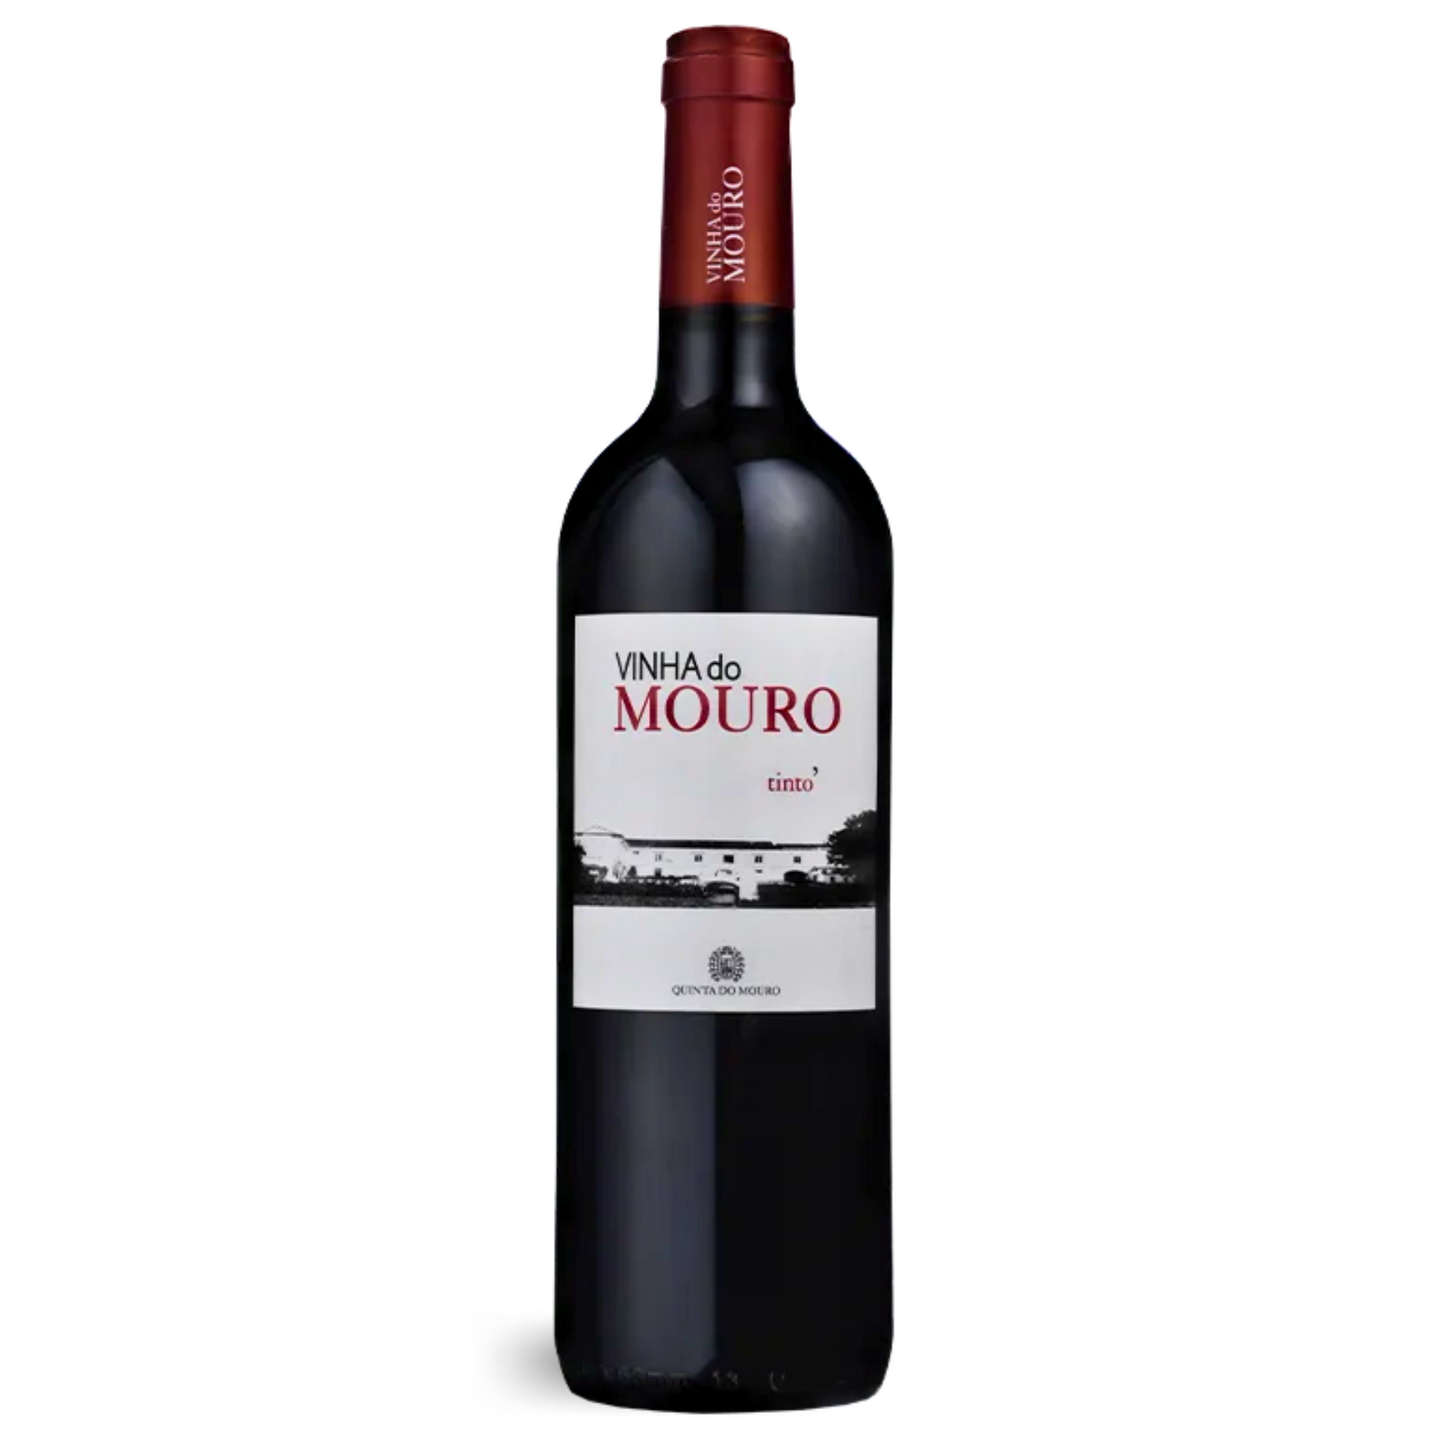 Flasche VINHA DO MOURO ROTWEIN 2018 vom Weingut Quinta do Mouro, Tinto Red in der Vinho Bar erhältlich.